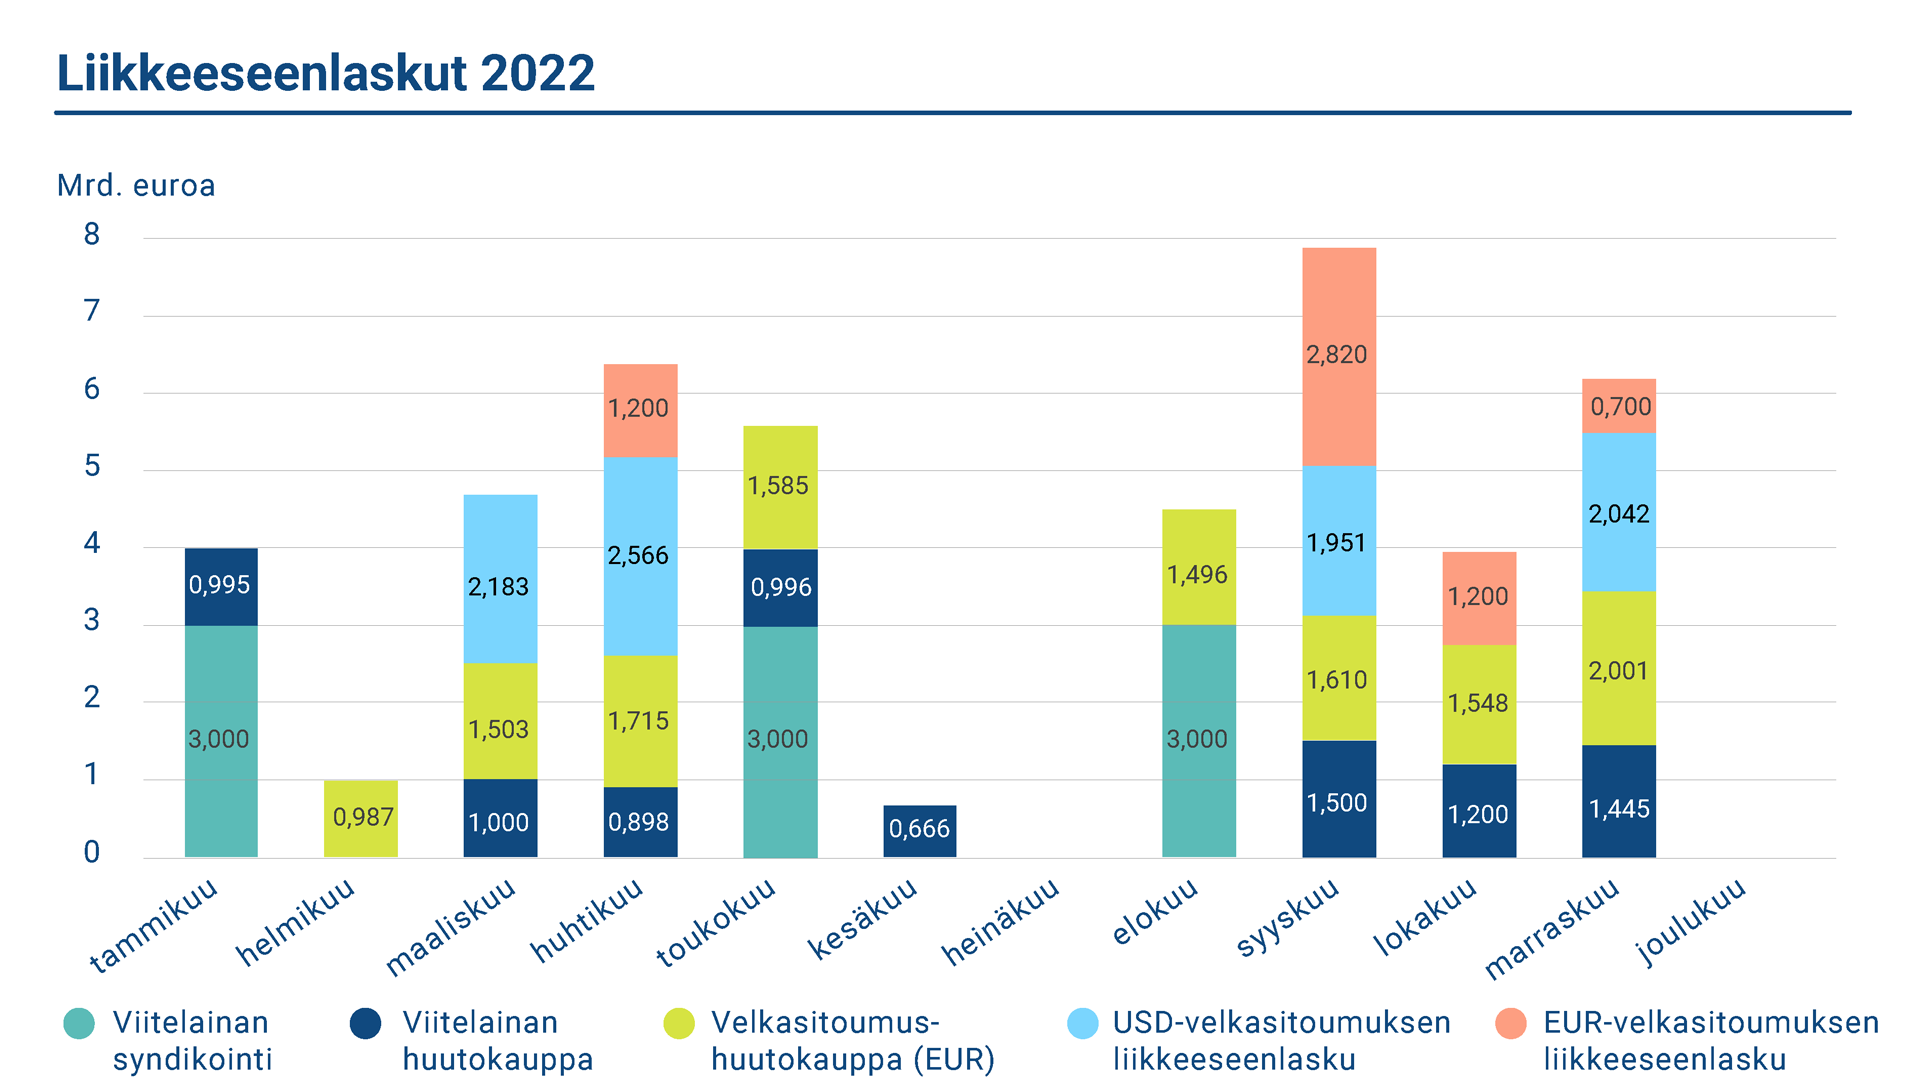 Kaavio kuvaa Suomen valtion liikkeeseenlaskut vuonna 2022.